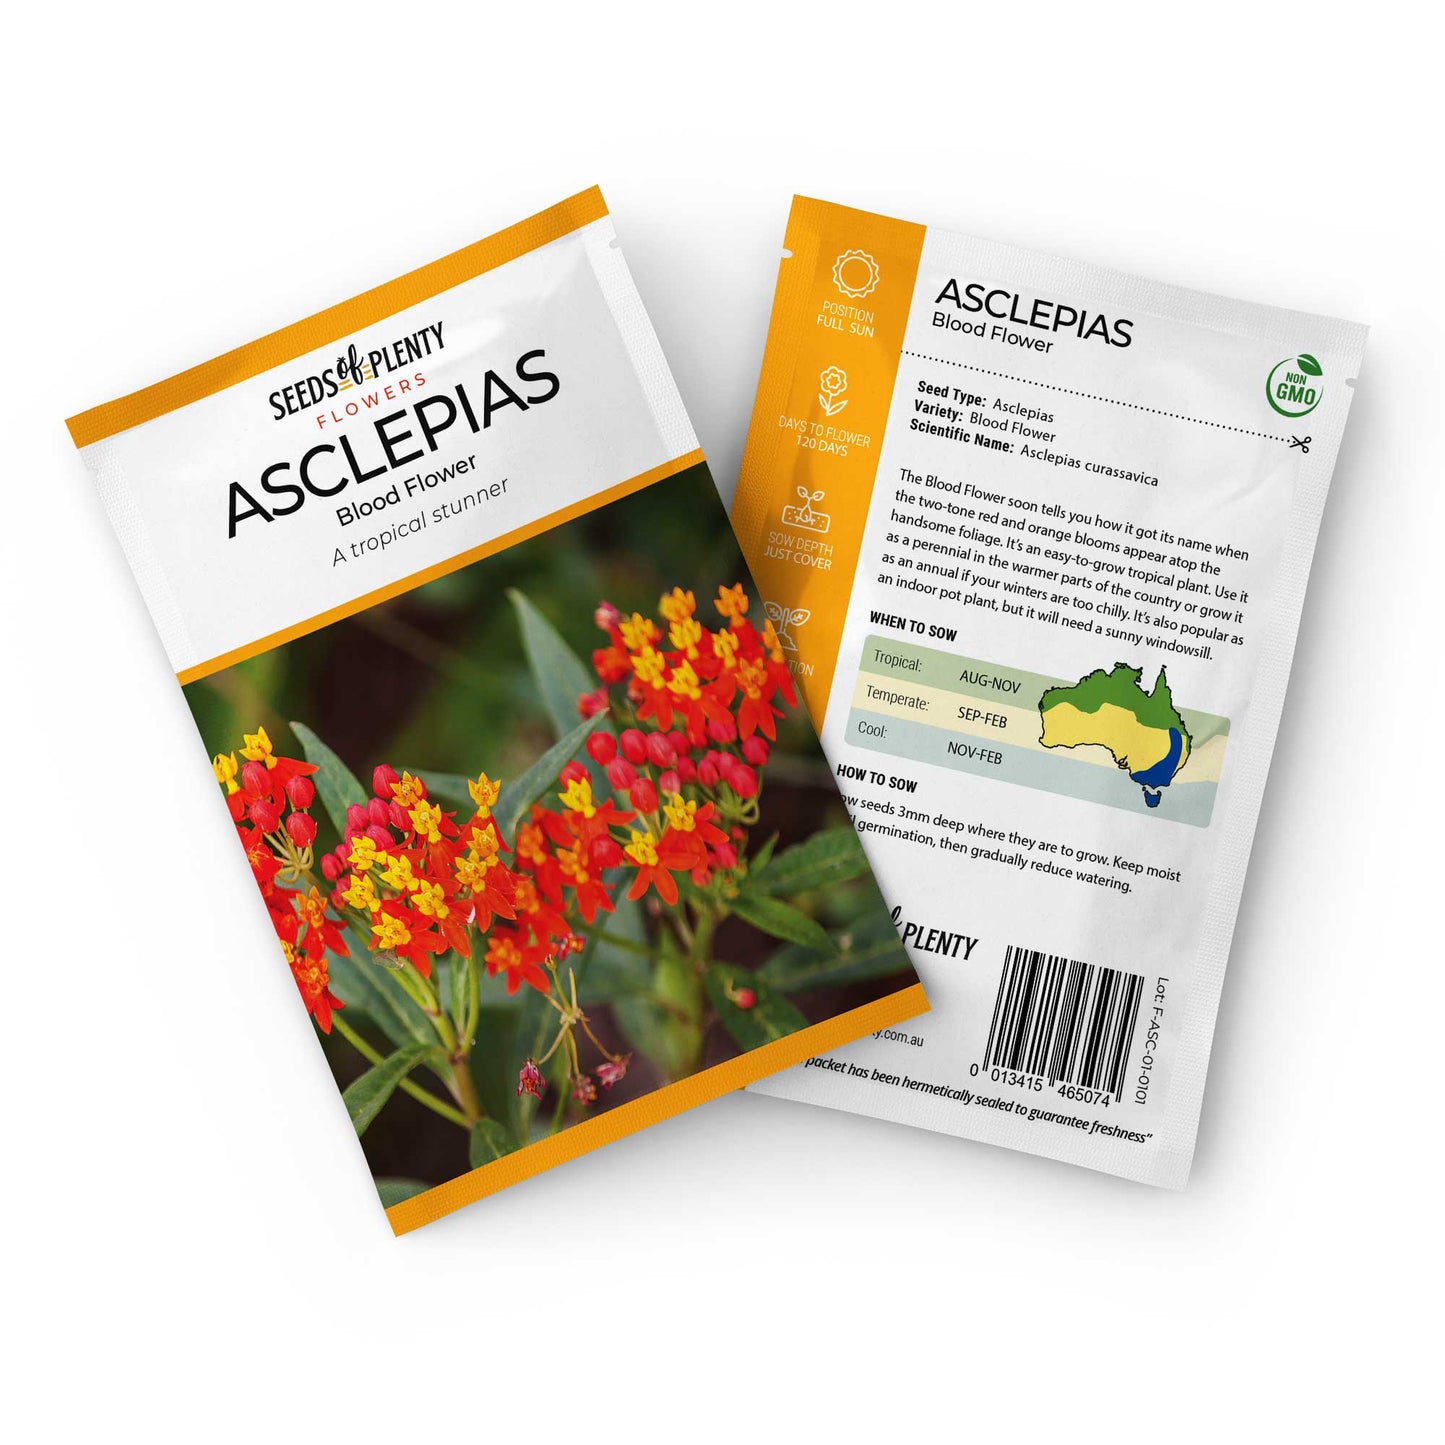 ASCLEPIAS - Blood Flower